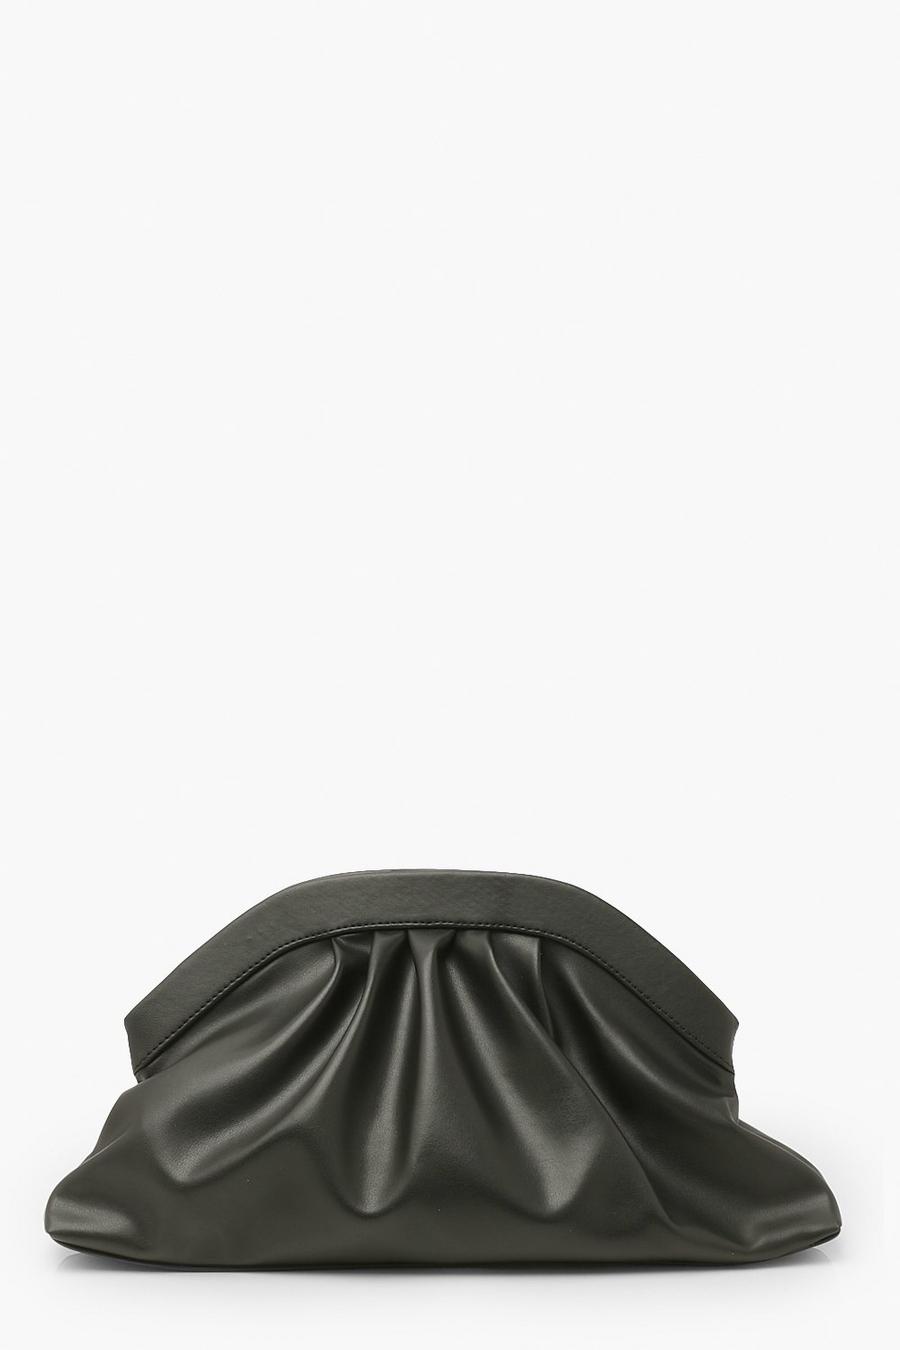 Black Oversized Ruched Clutch Bag image number 1